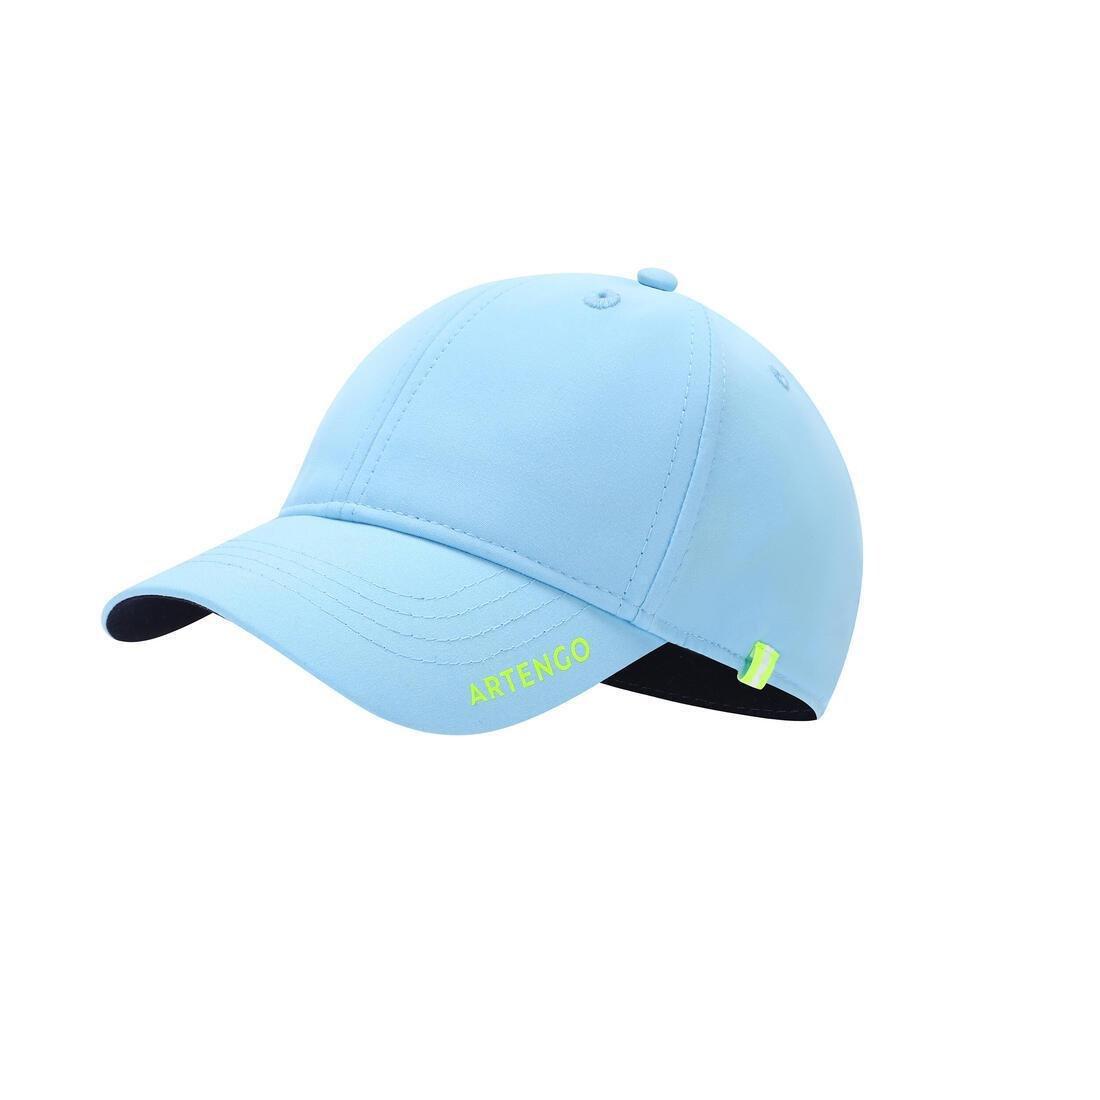 ARTENGO - Tennis Cap Tc 500 54 Cm, Blue